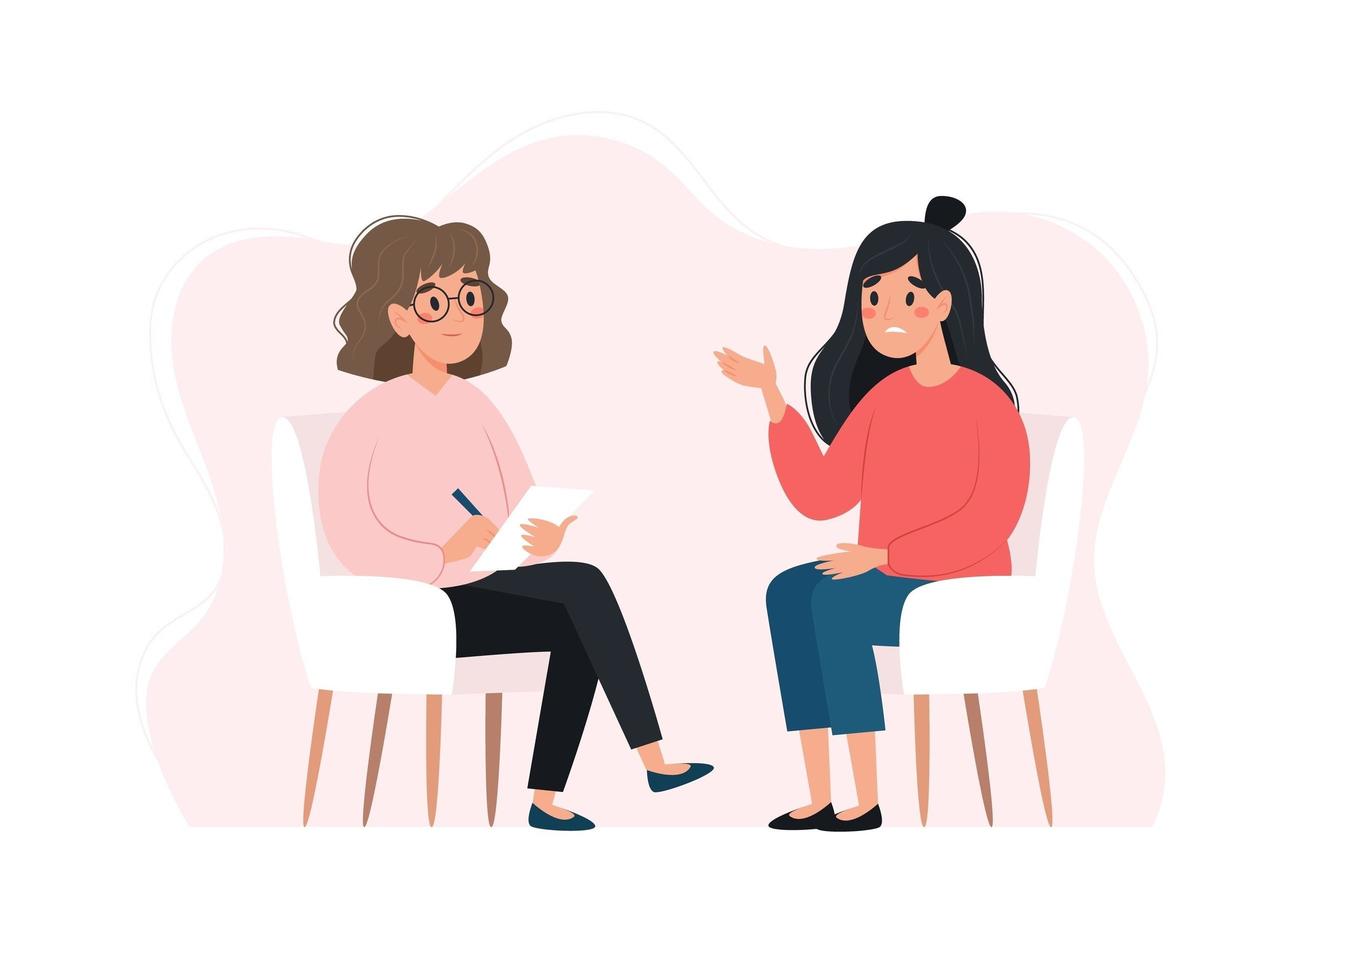 sesión de psicoterapia - mujer hablando con psicóloga. concepto de salud mental, ilustración vectorial en estilo plano vector